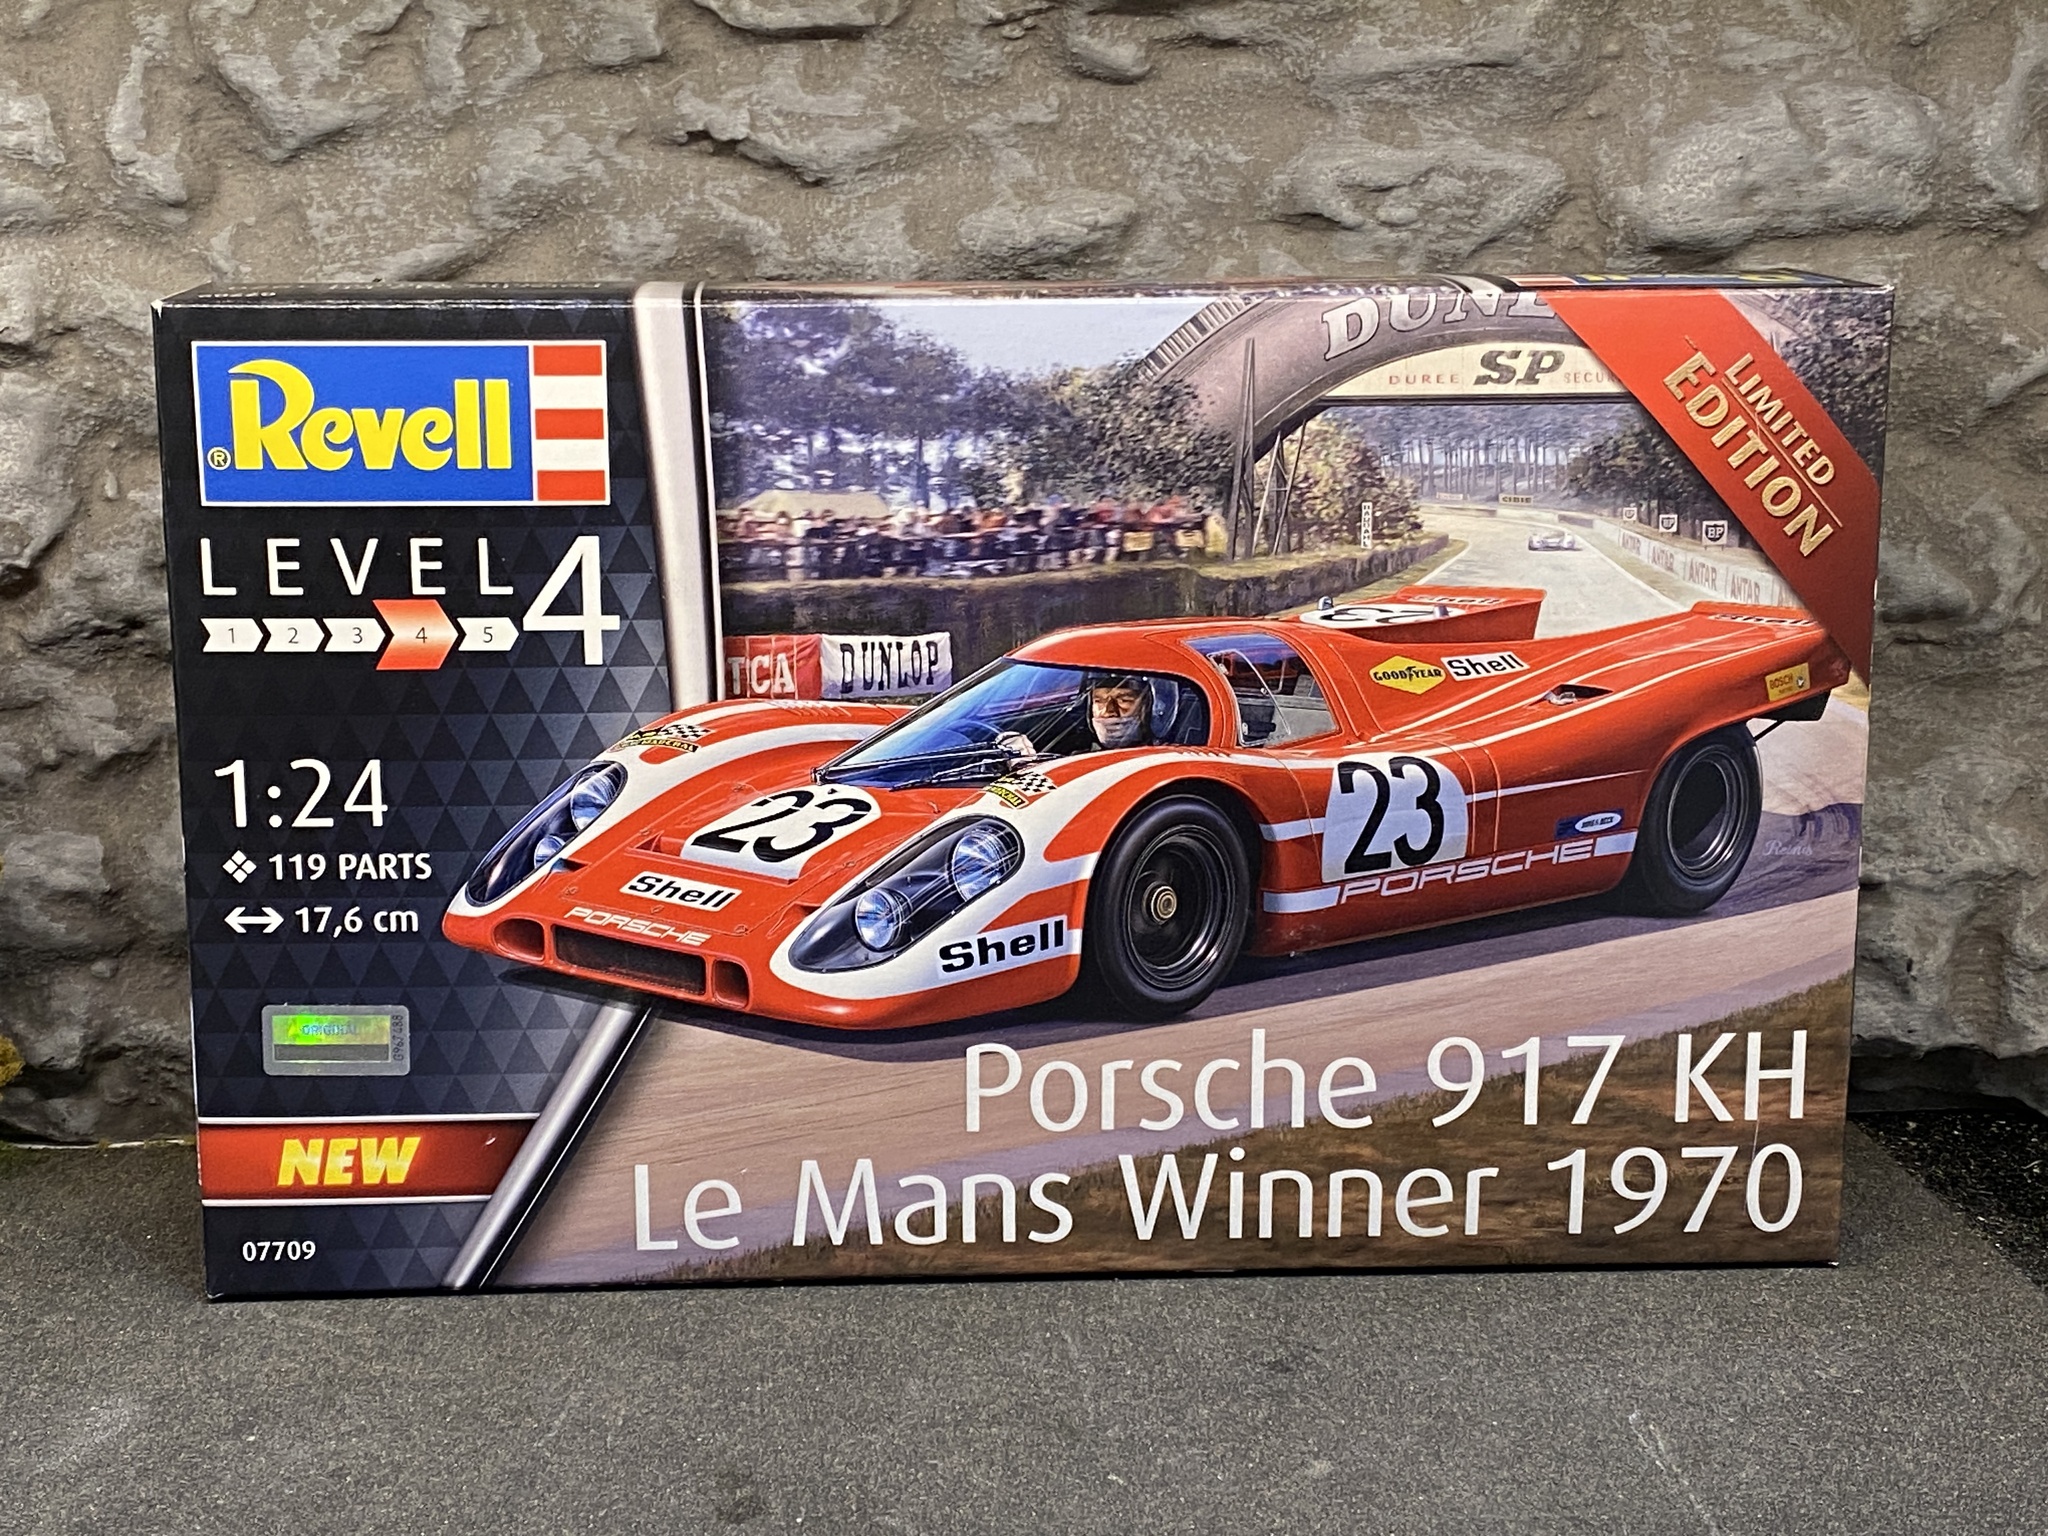 Skala 1/24 Porsche 917 KH, Le Mans Winner 1970' plastic modelkit fr Revell